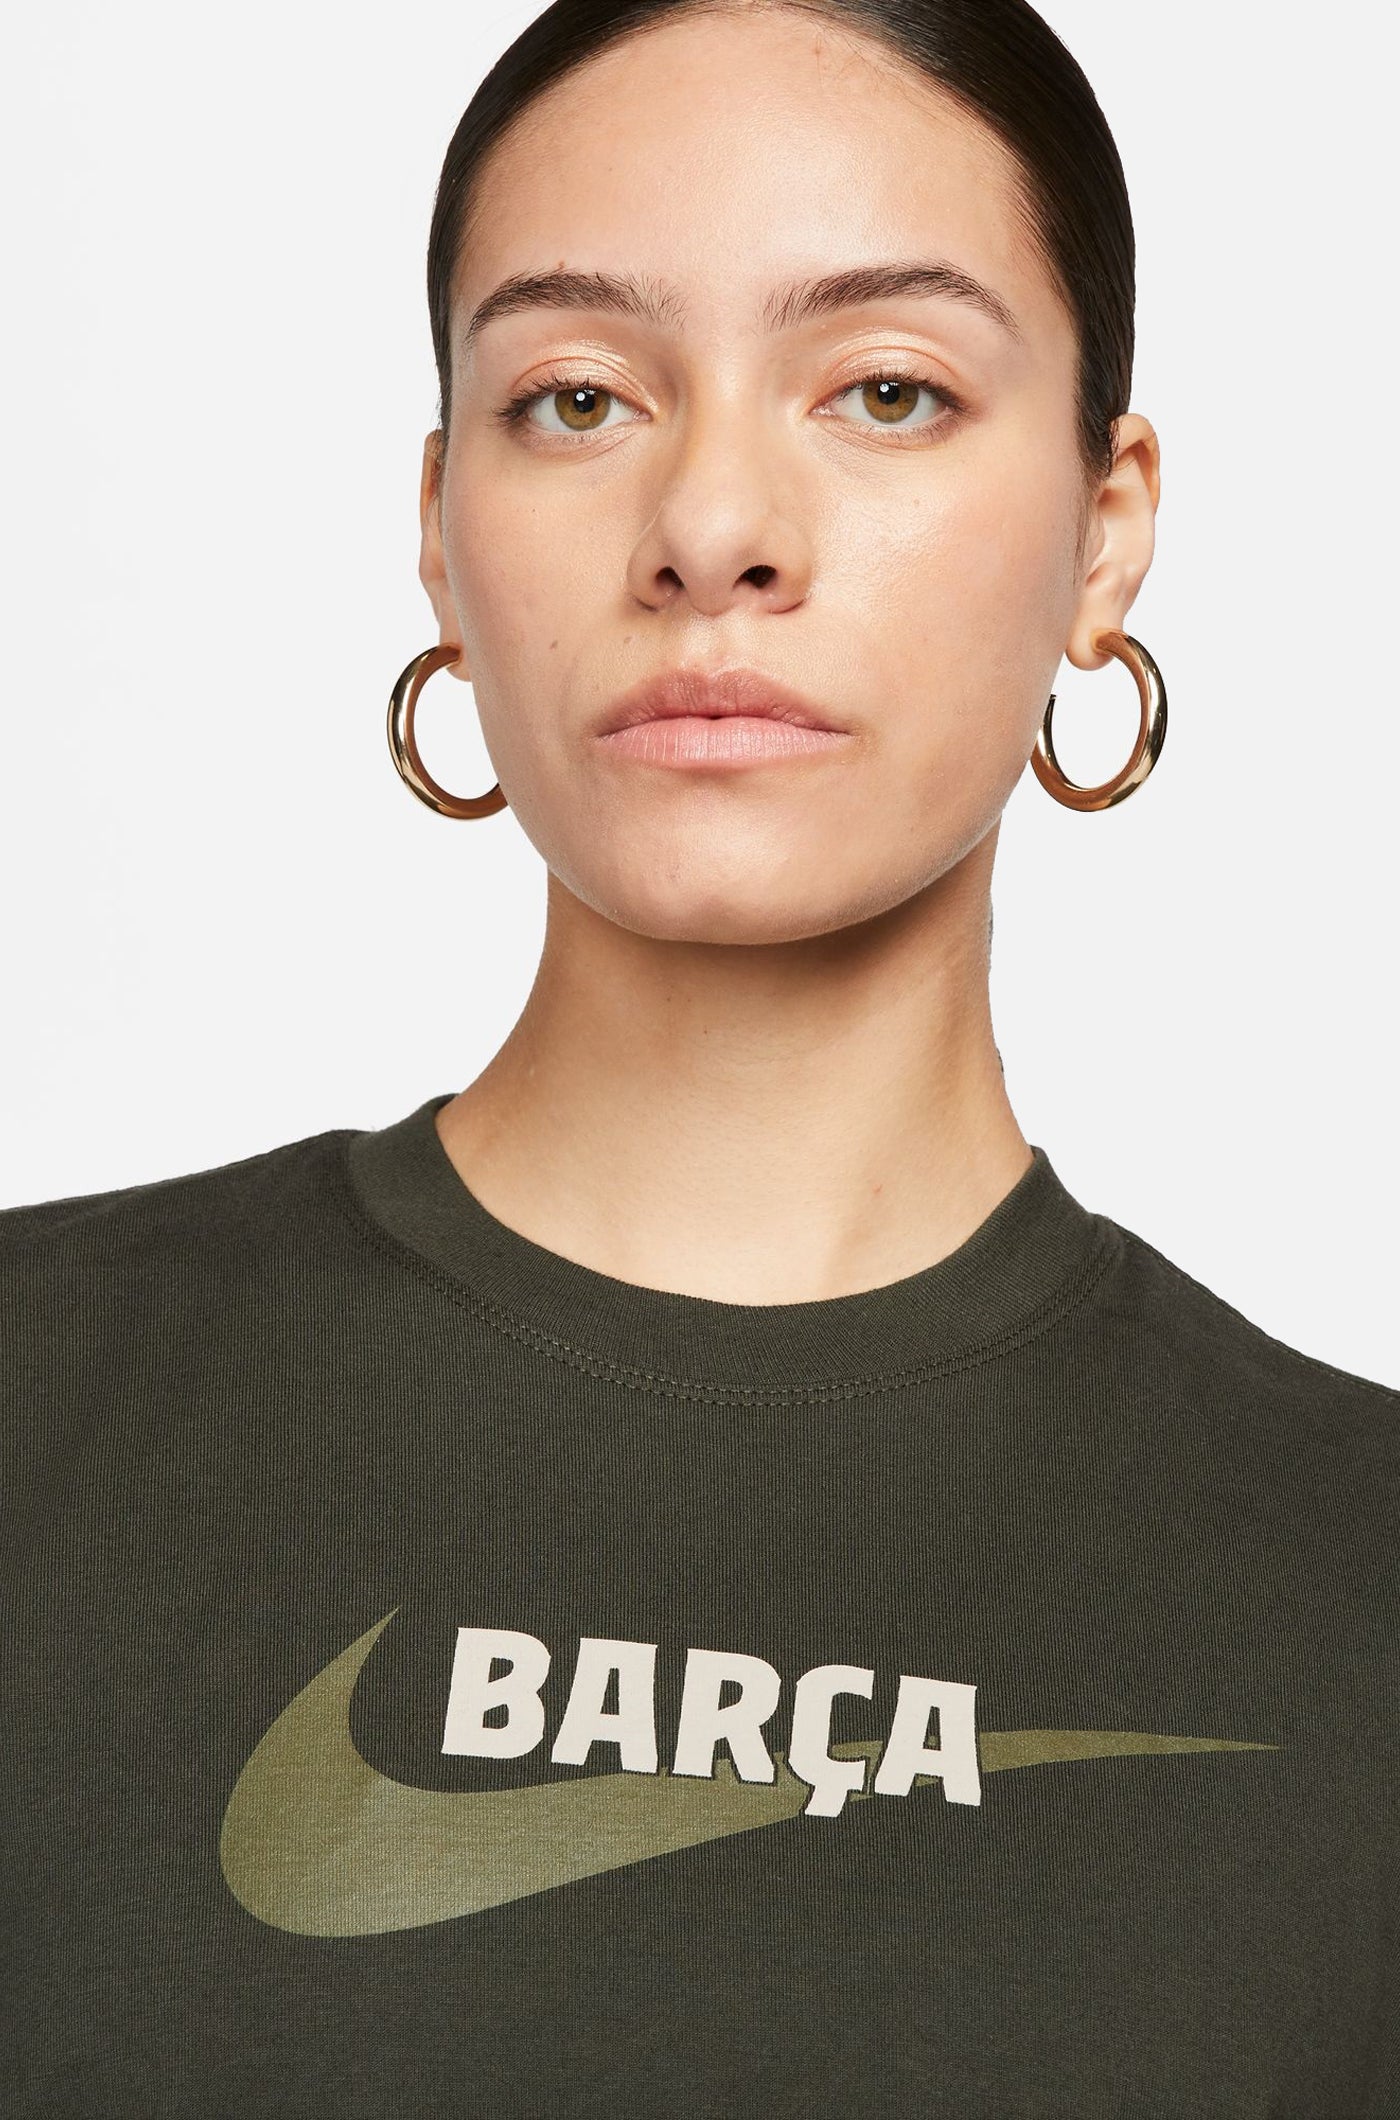 T-shirt green Barça Nike - Women